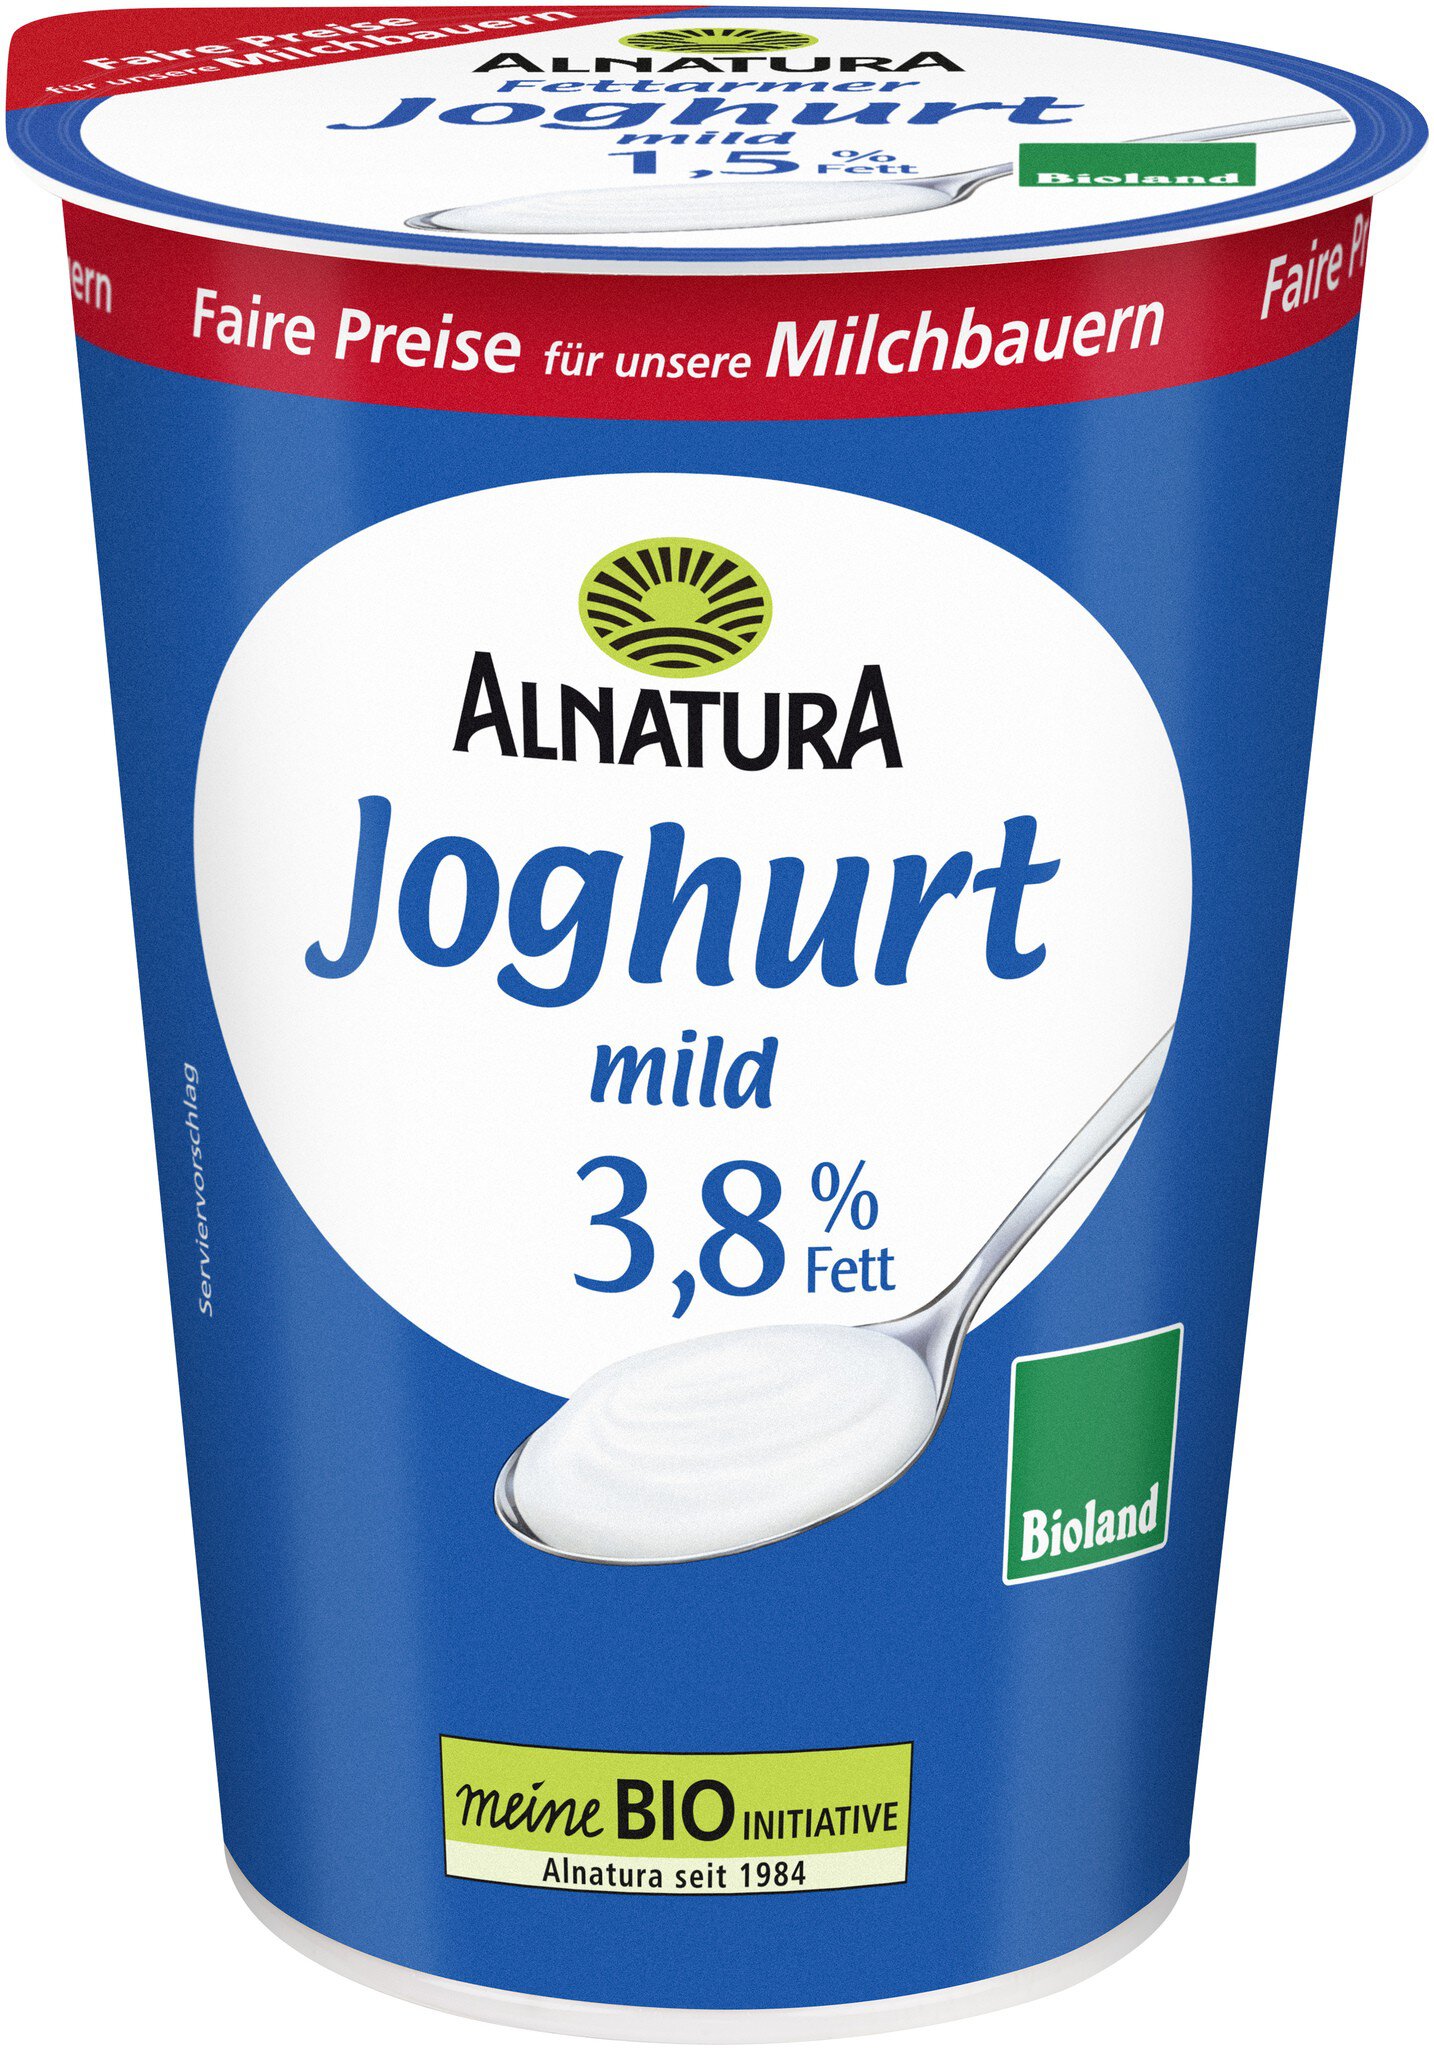 Joghurt mild 3,8 % Fett (500 g) in Bio-Qualität von Alnatura | 